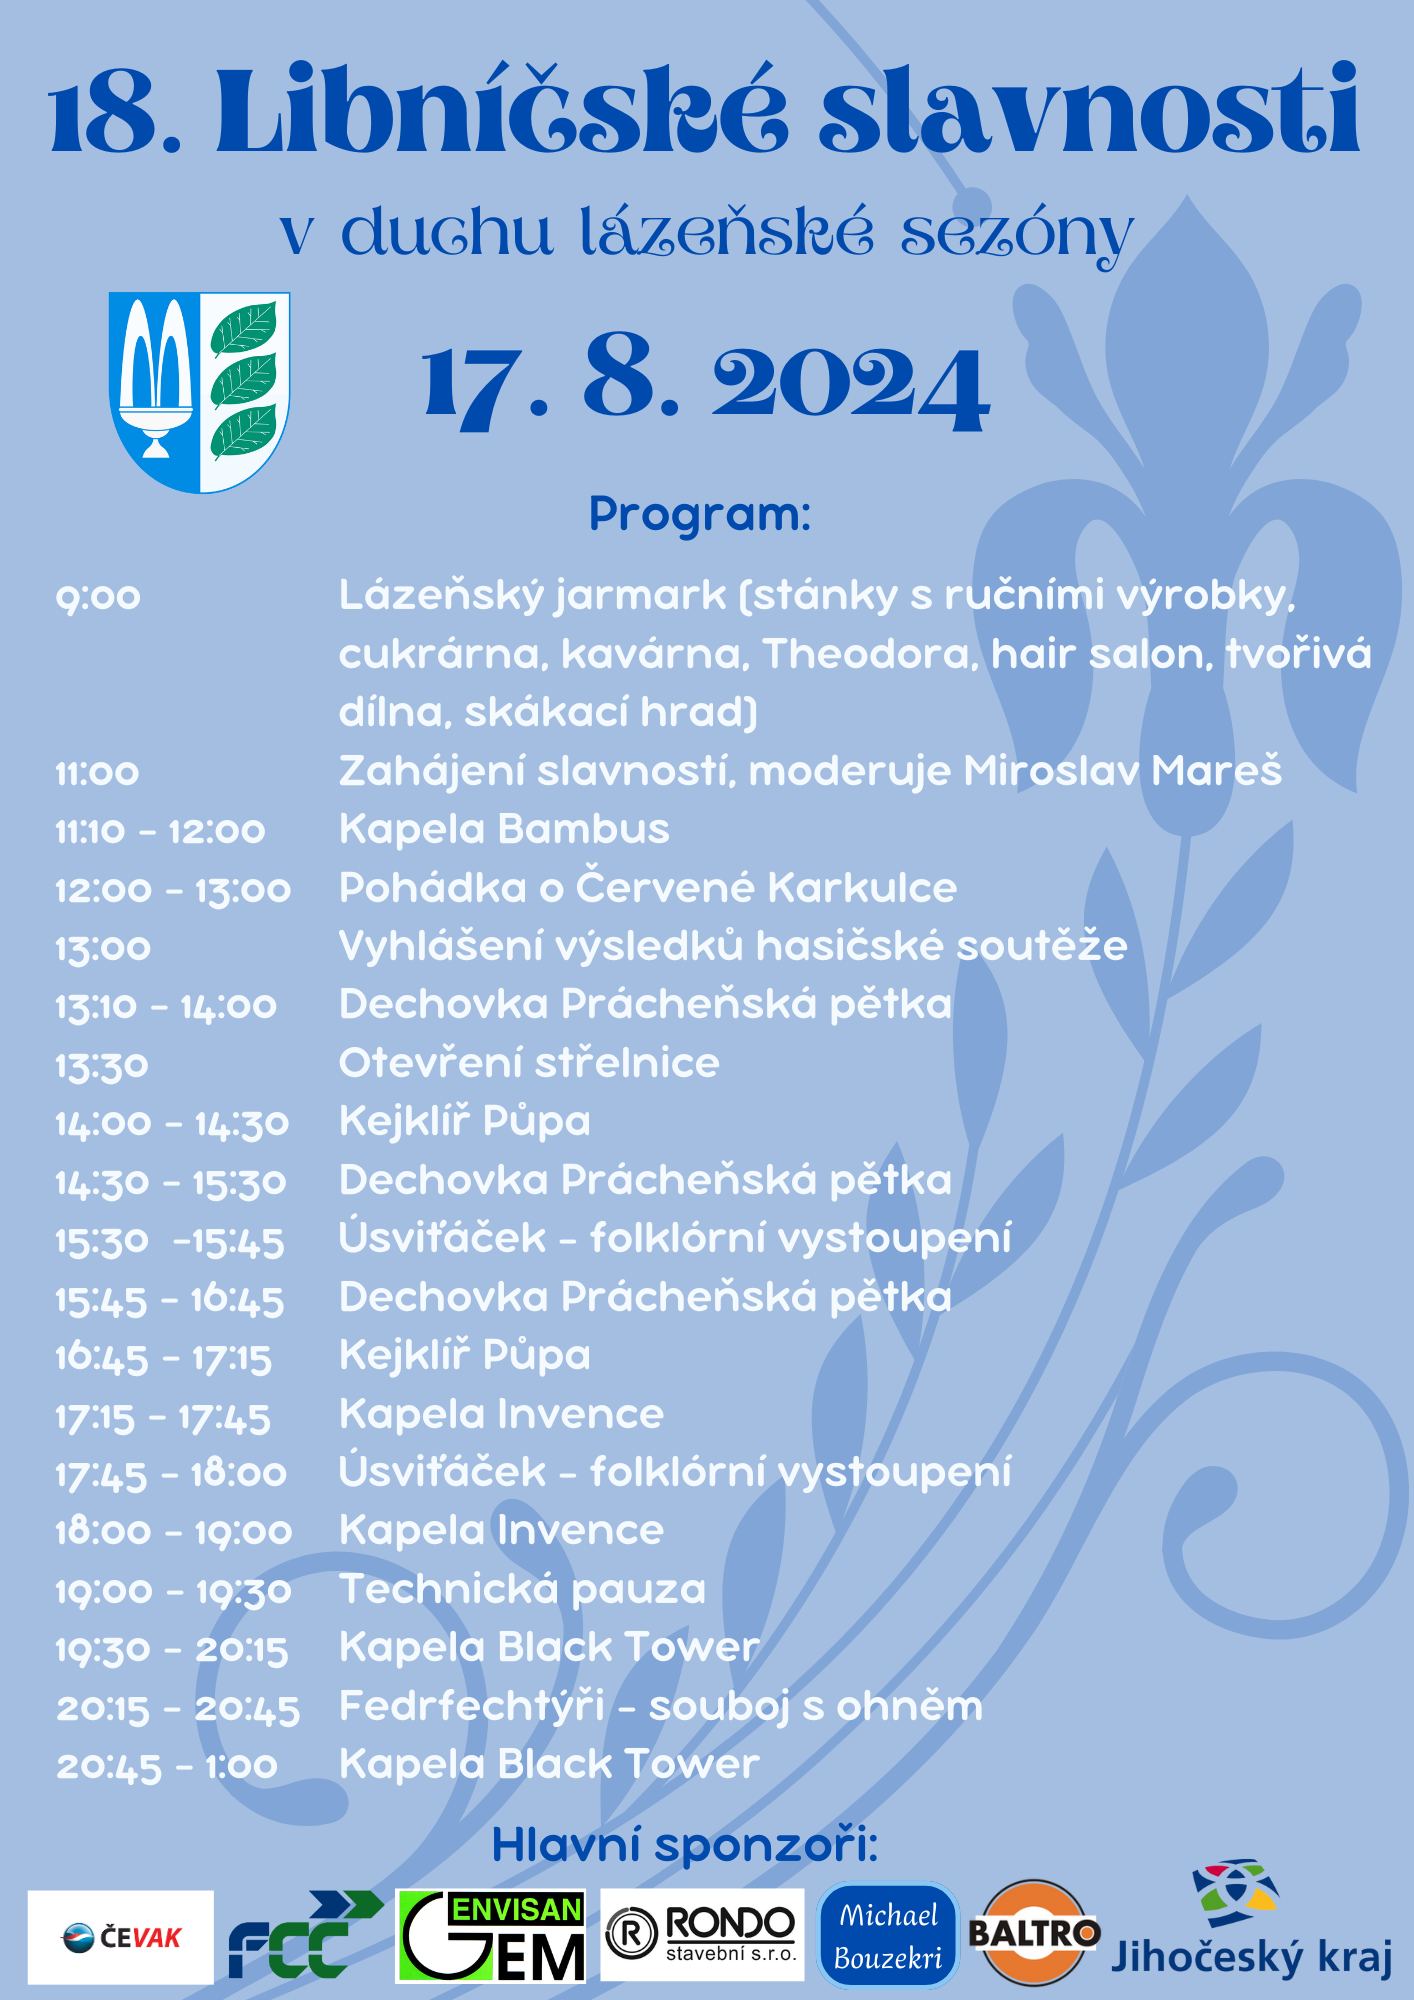 Pozvánka - Libničské slavnosti 17.8.2024